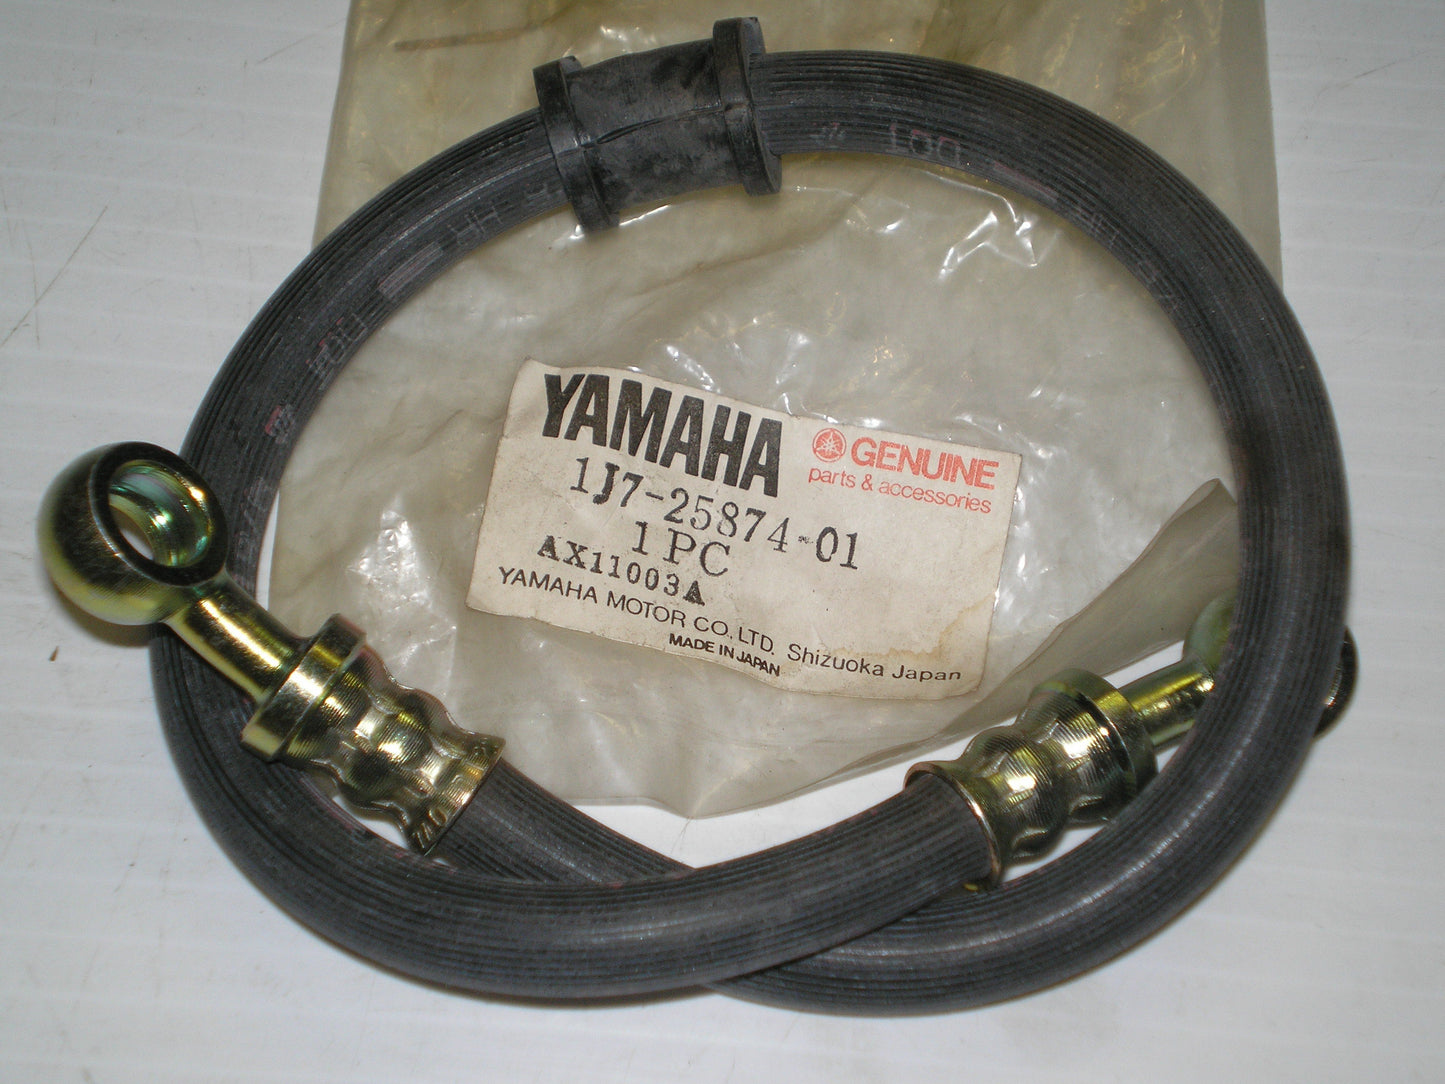 YAMAHA XS750 1977-1979 Rear Brake Hose 1J7-25874-01